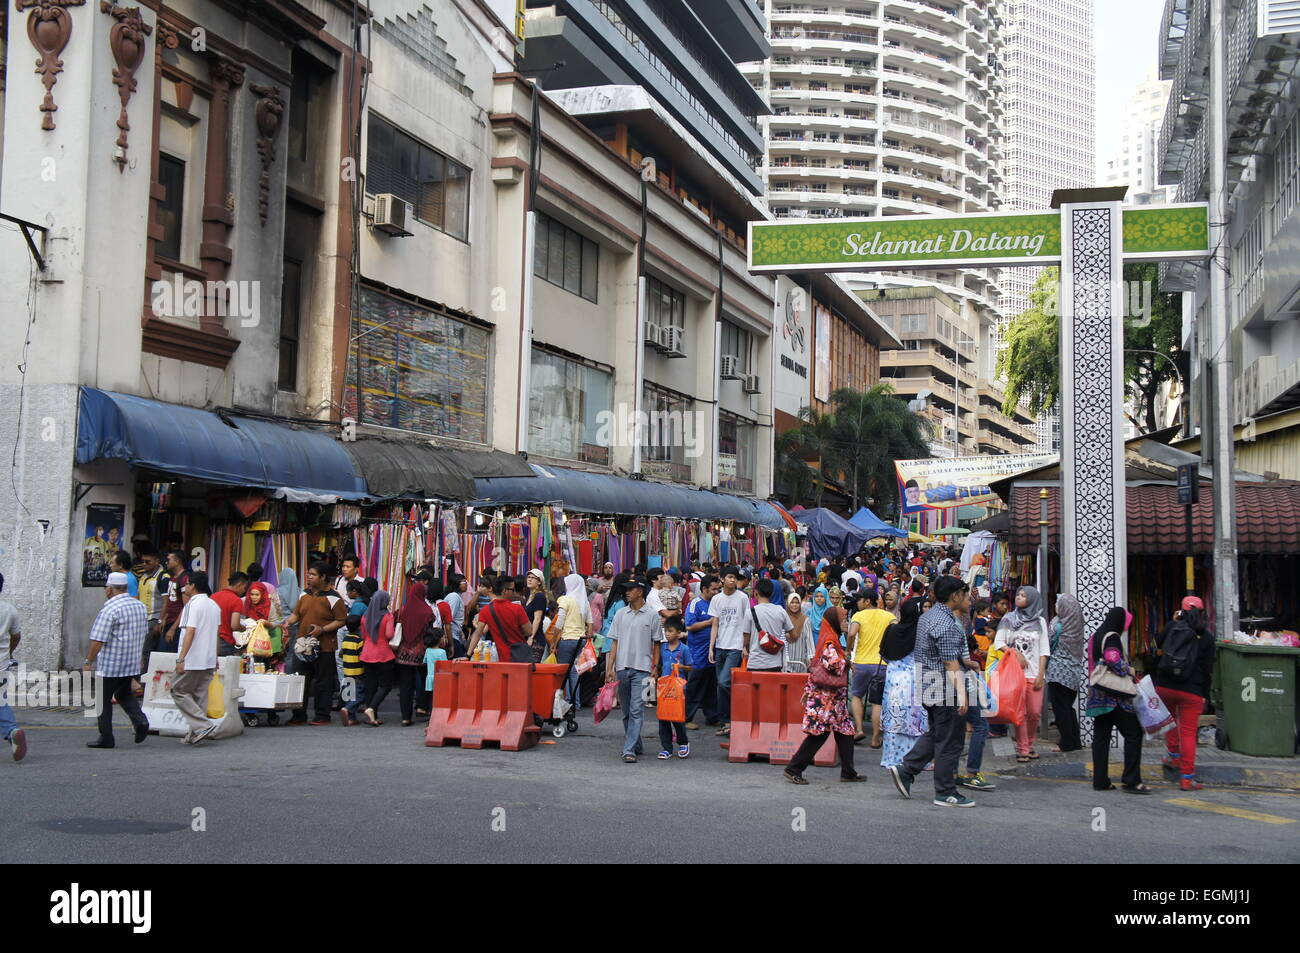 street bazaar at Jalan Tuanku Abdul Rahman, Kuala Lumpur, Malaysia Stock Photo